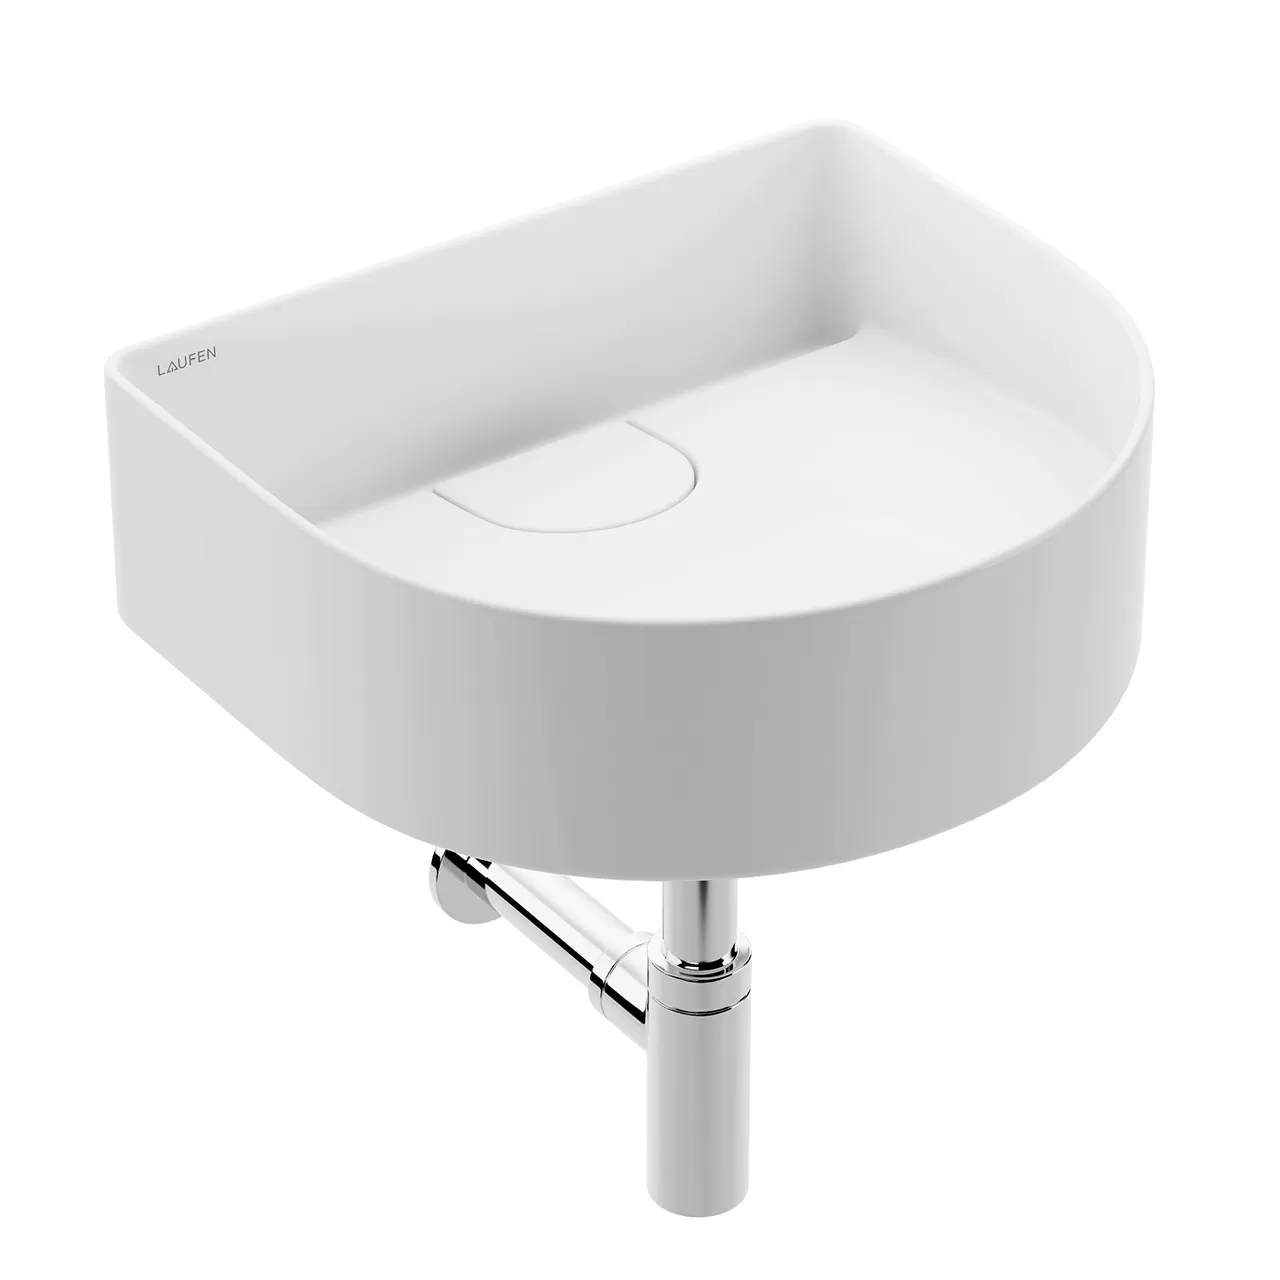 Bathroom – sonar-washbasin-bowl-812342-by-laufen